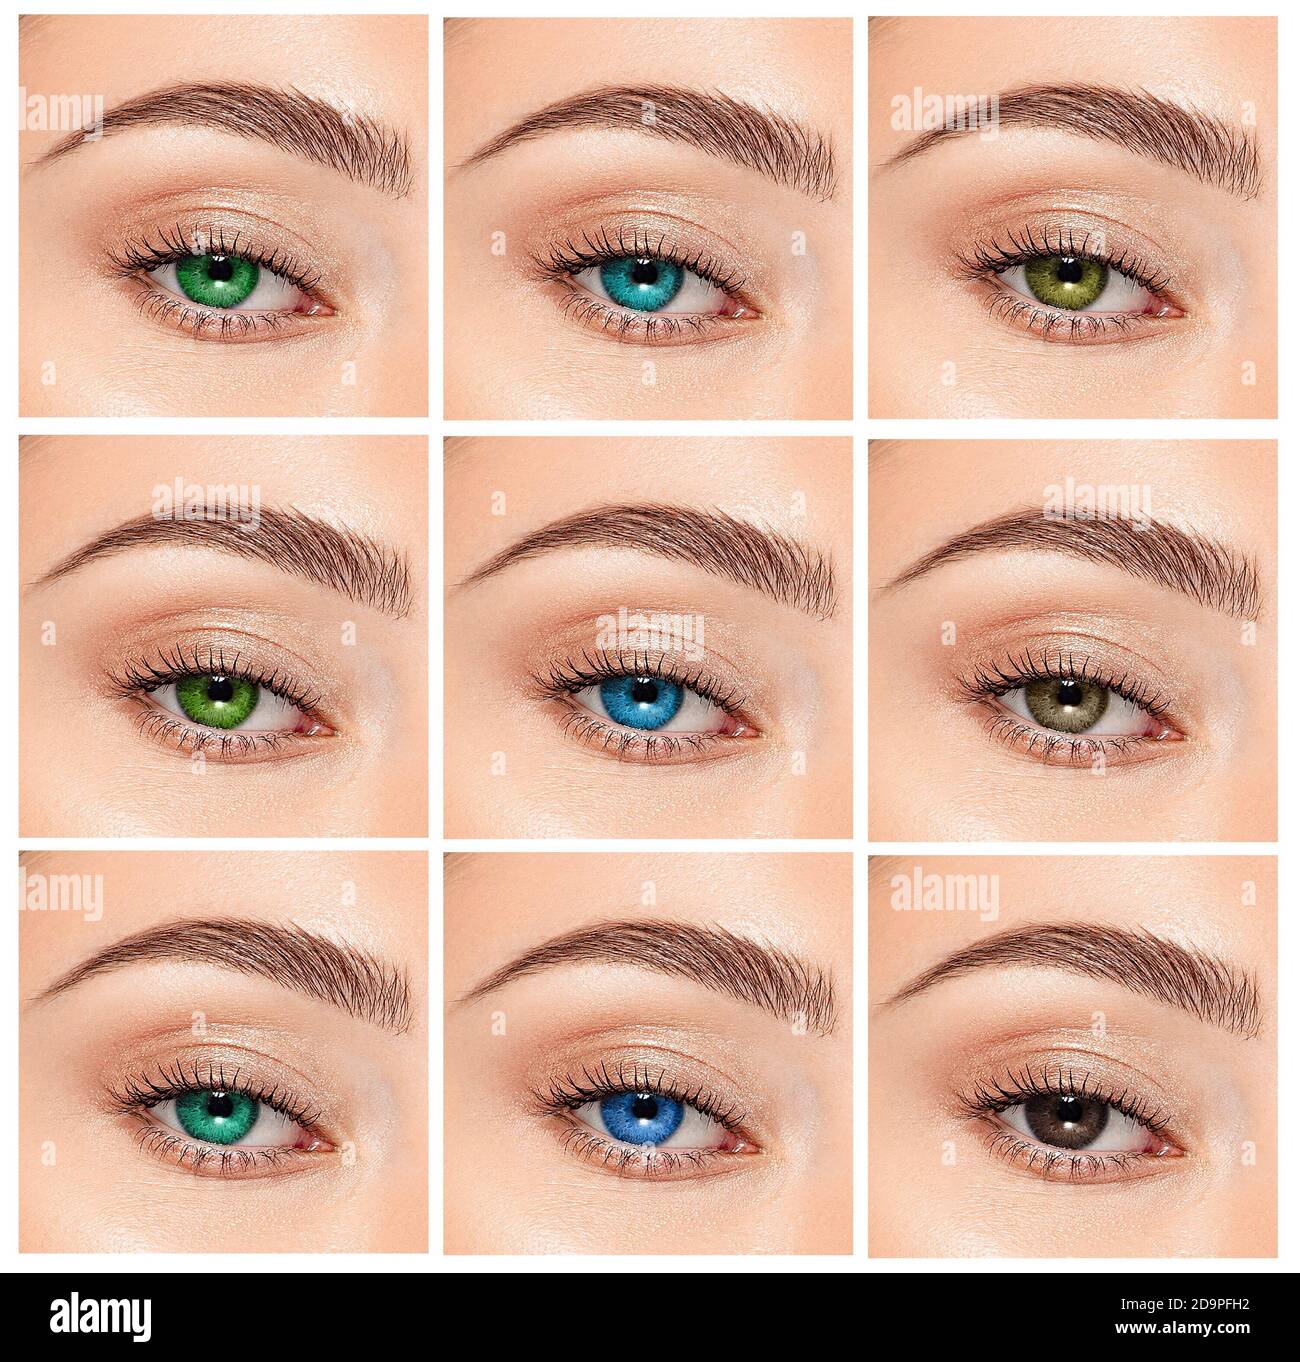 Primo piano, collage di occhi con diversi colori, tonalità di colore verde, grigio e blu sulle lenti a contatto di colore sull'occhio umano Foto Stock